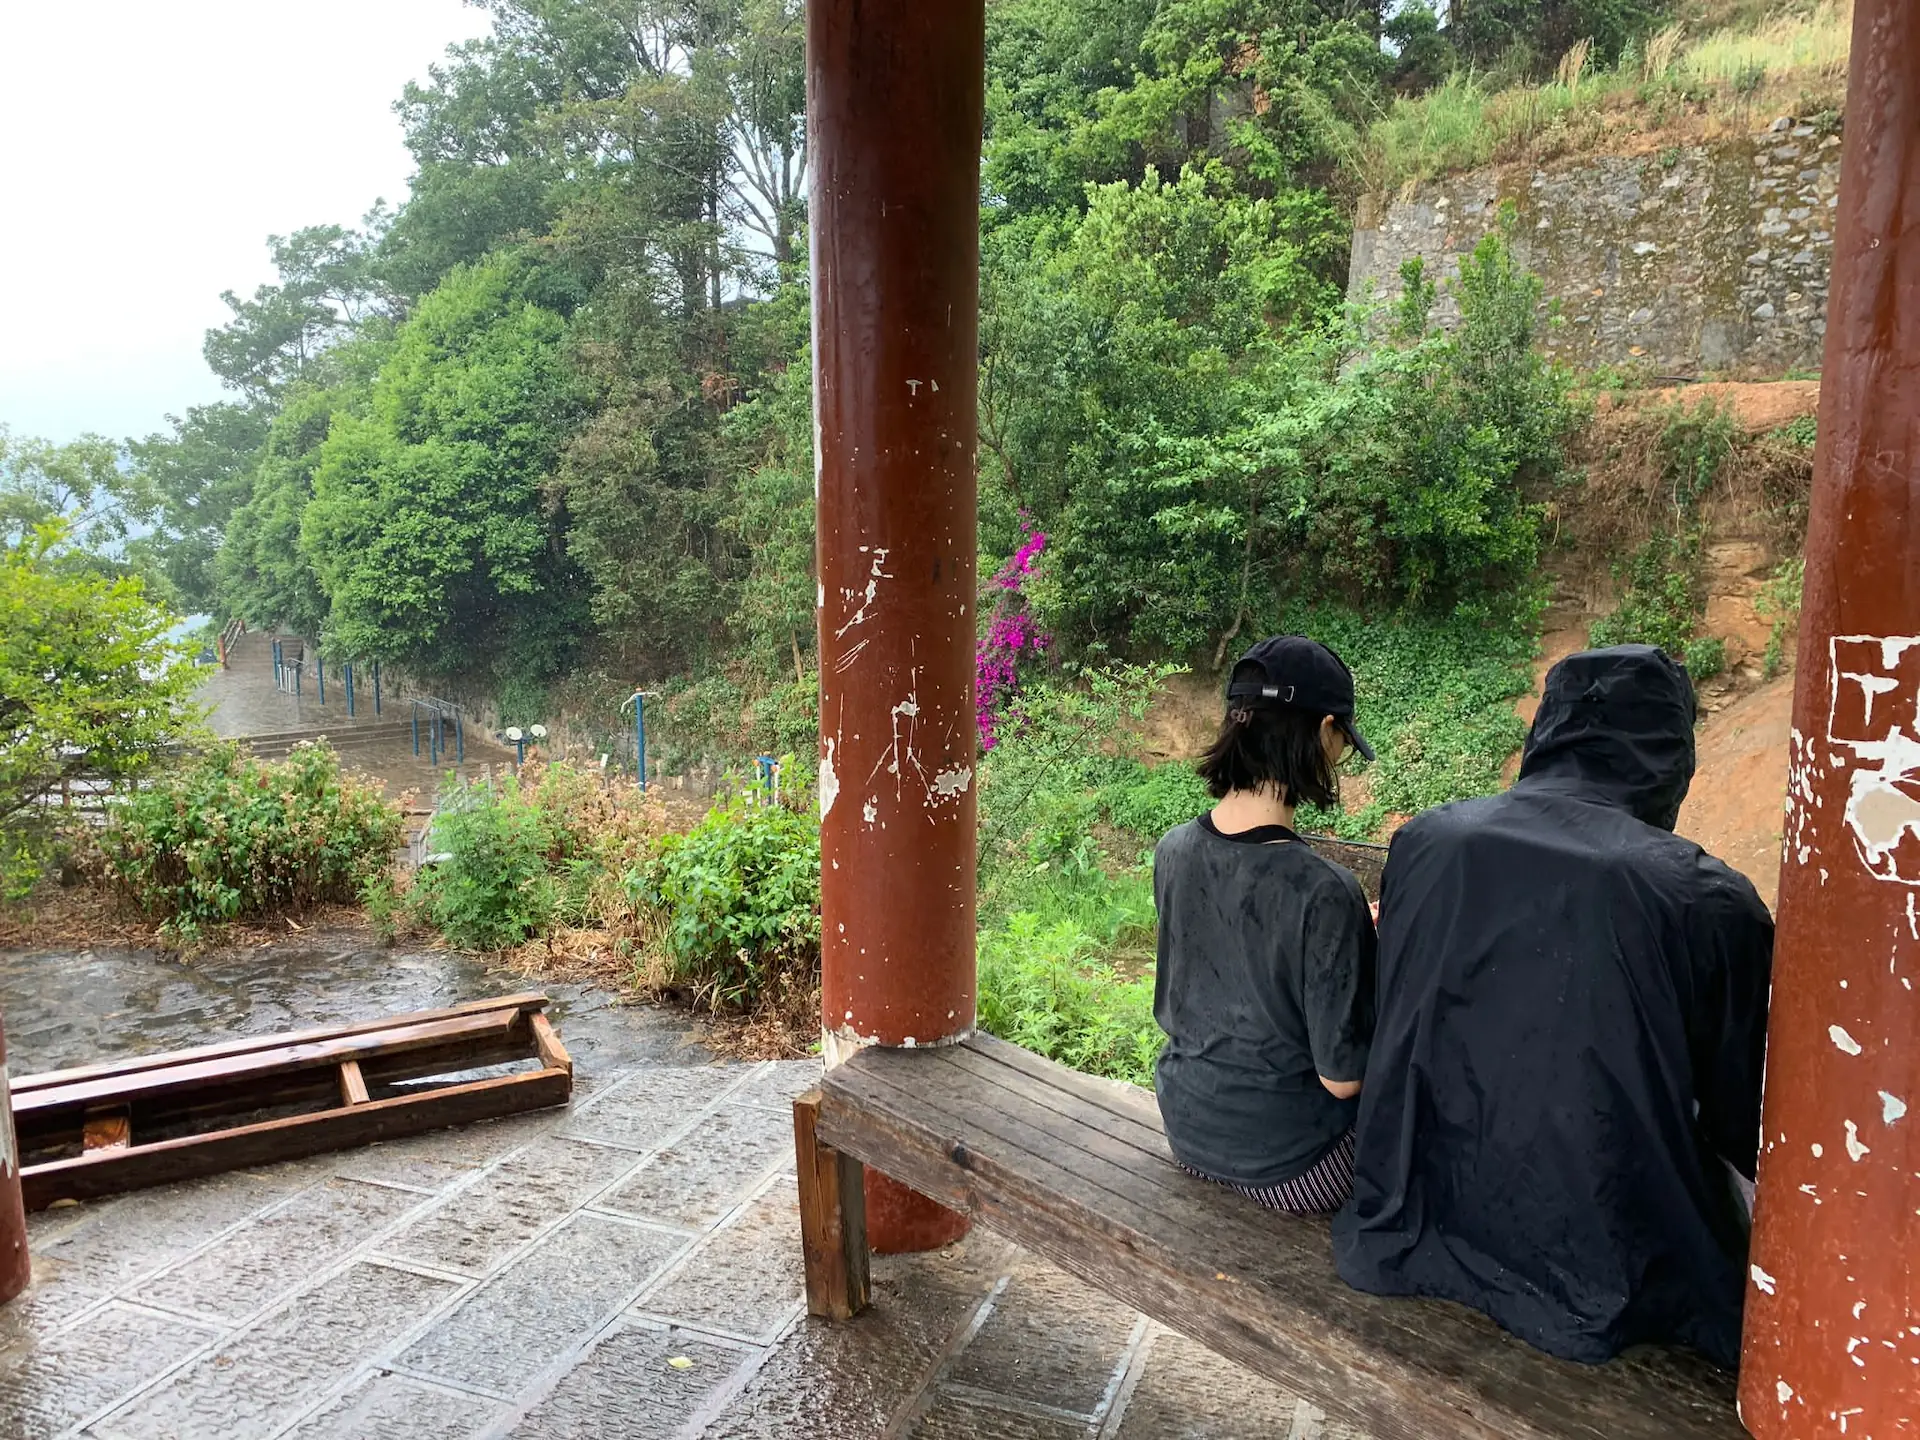 Clara et Robin, assis sur un banc sous le pavillon. La pluie tombe autour d'eux.